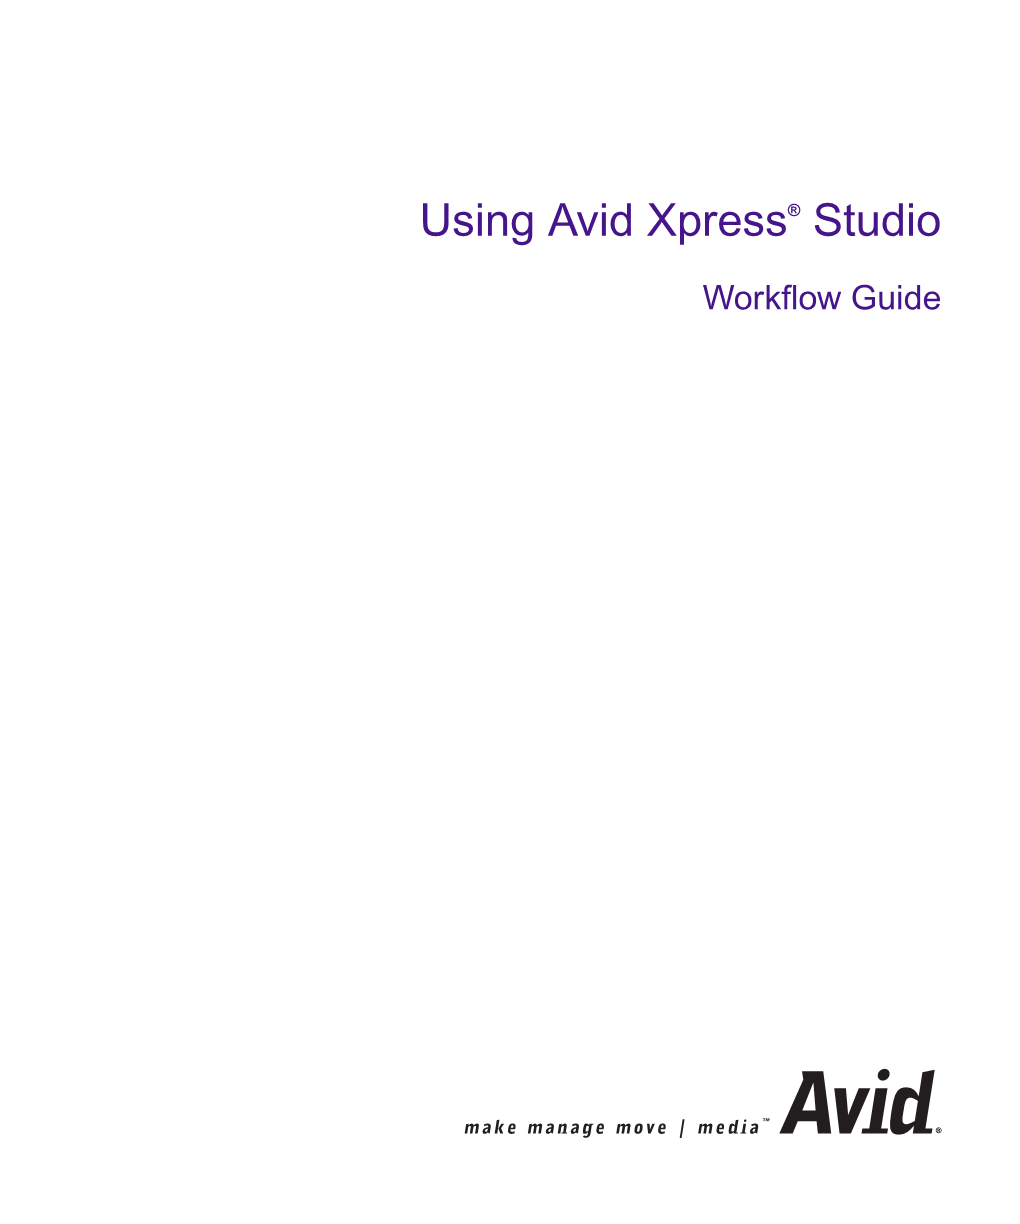 Using Avid Xpress Studio Workflow Guide• Part 0130-06216-01 • June 2004